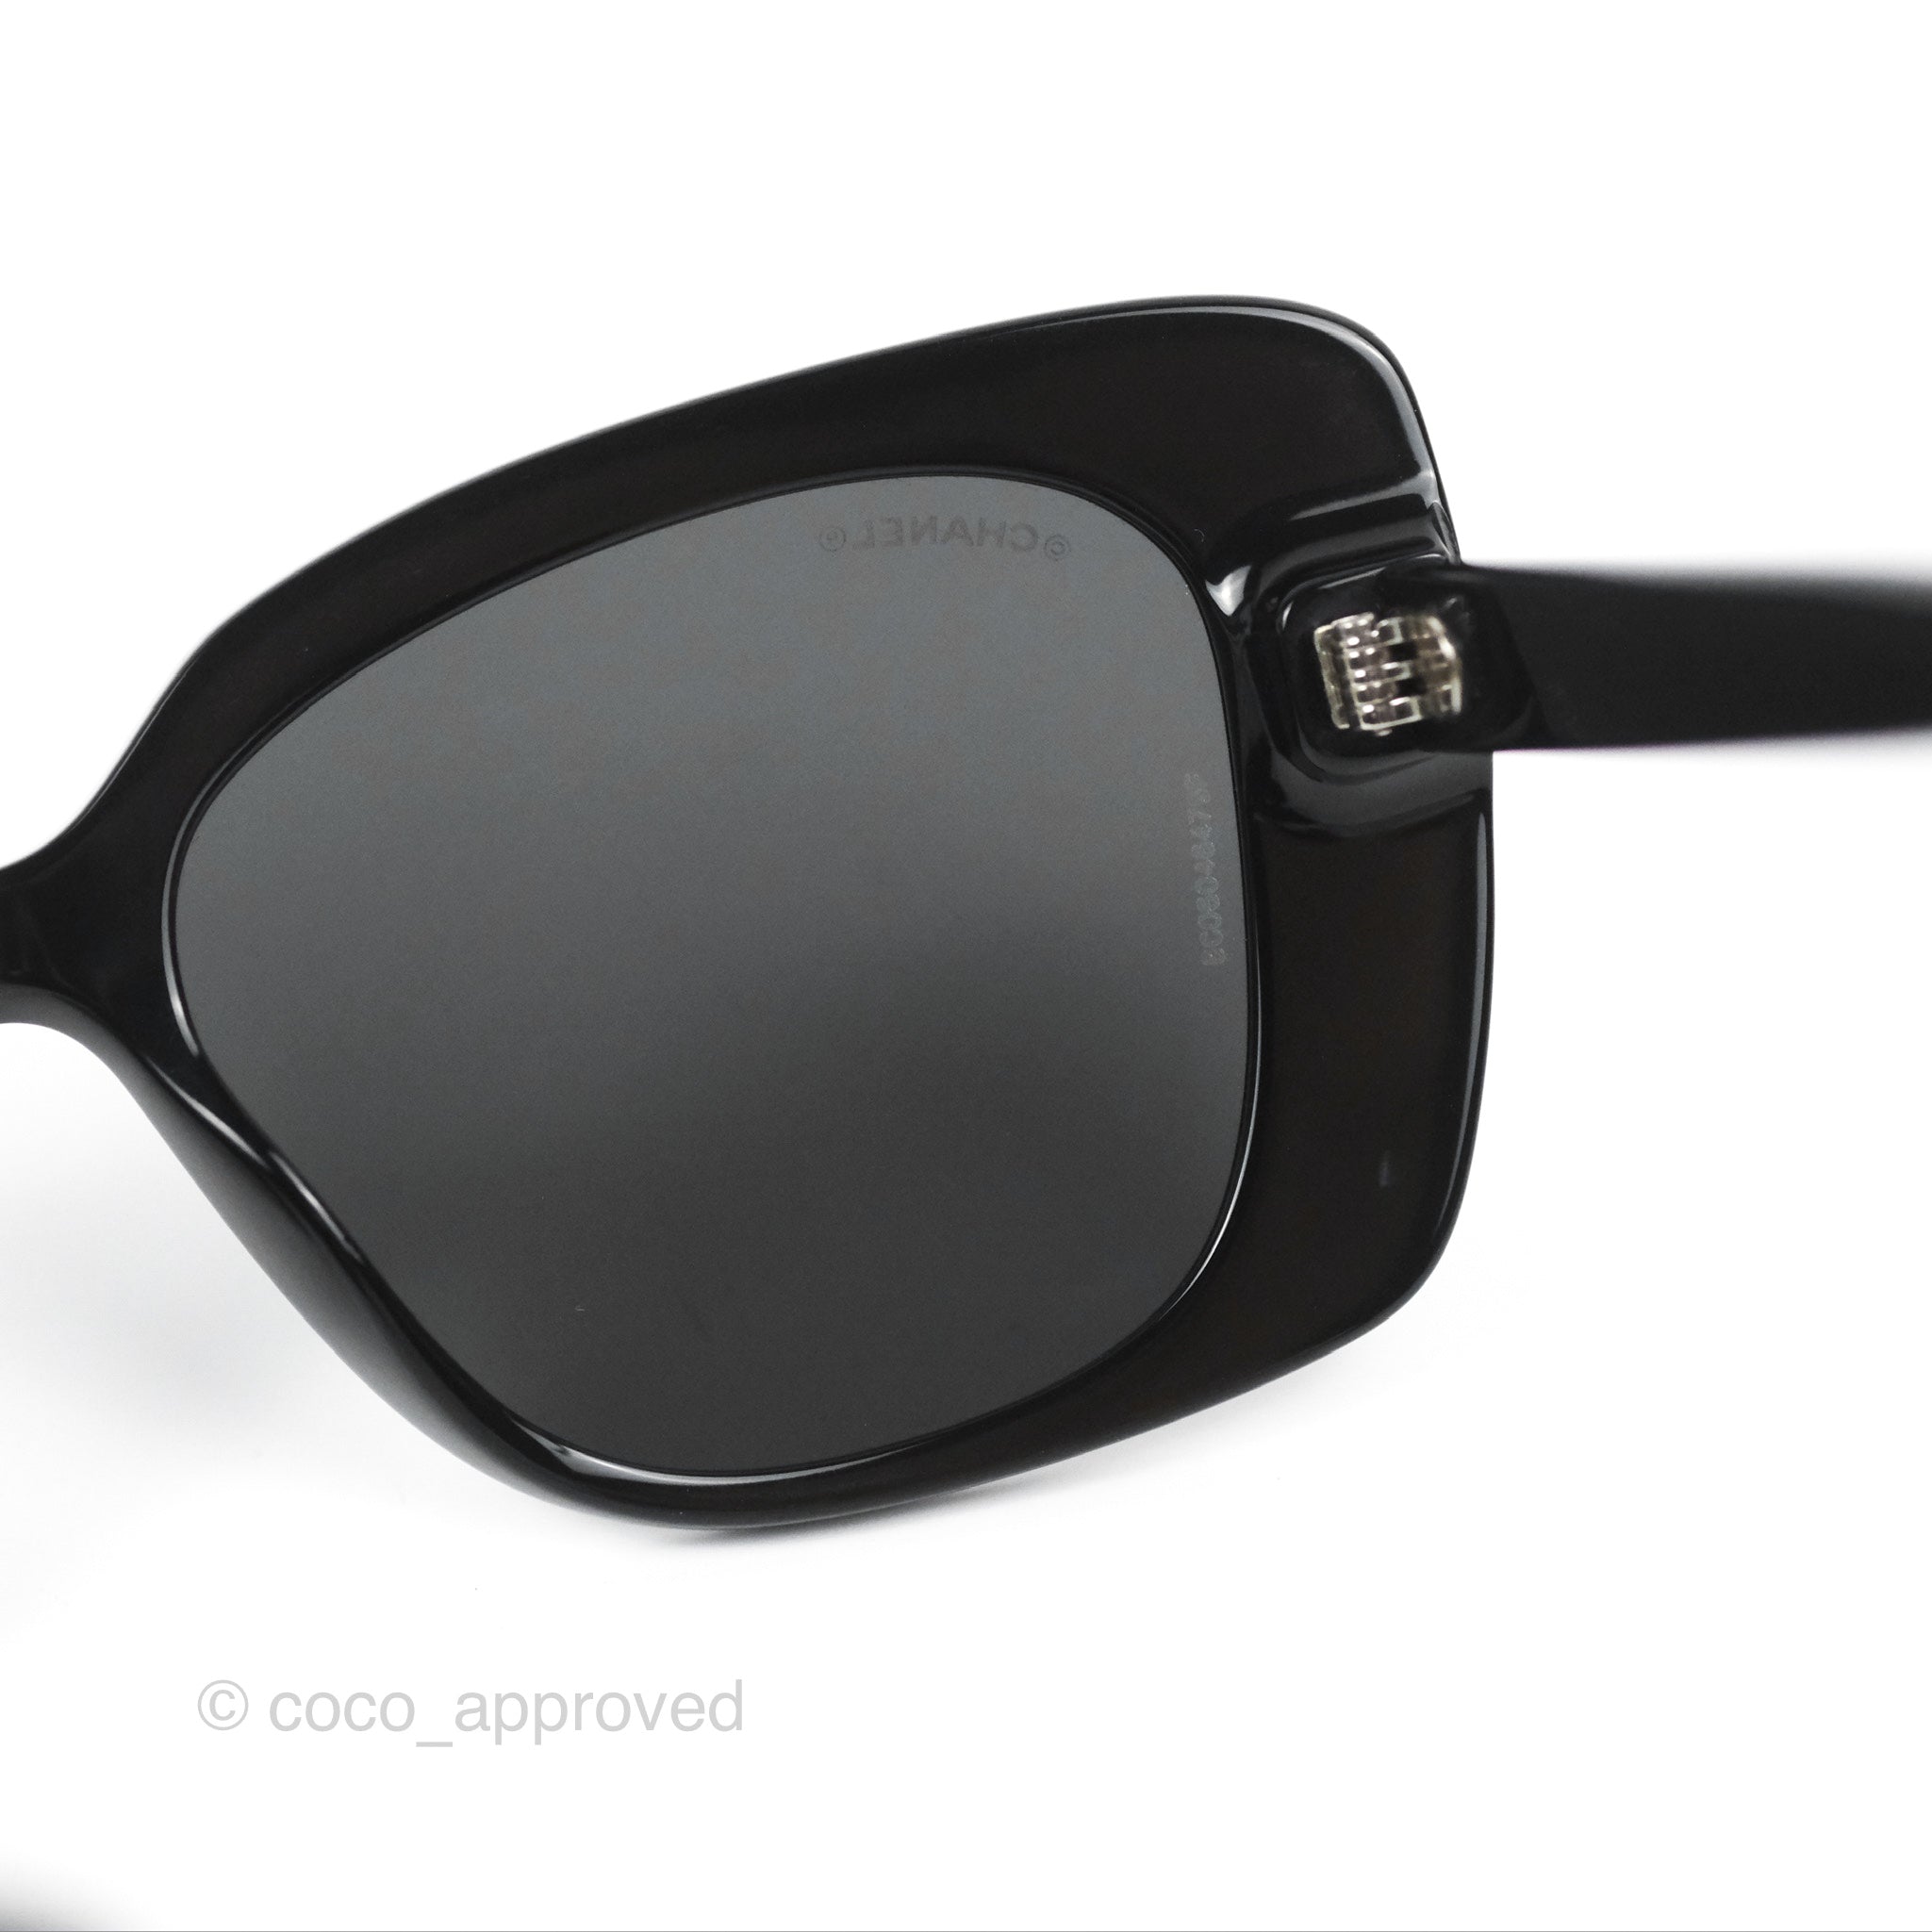 Chanel Acetate Strass Square Polarized Sunglasses Black/White – Coco  Approved Studio